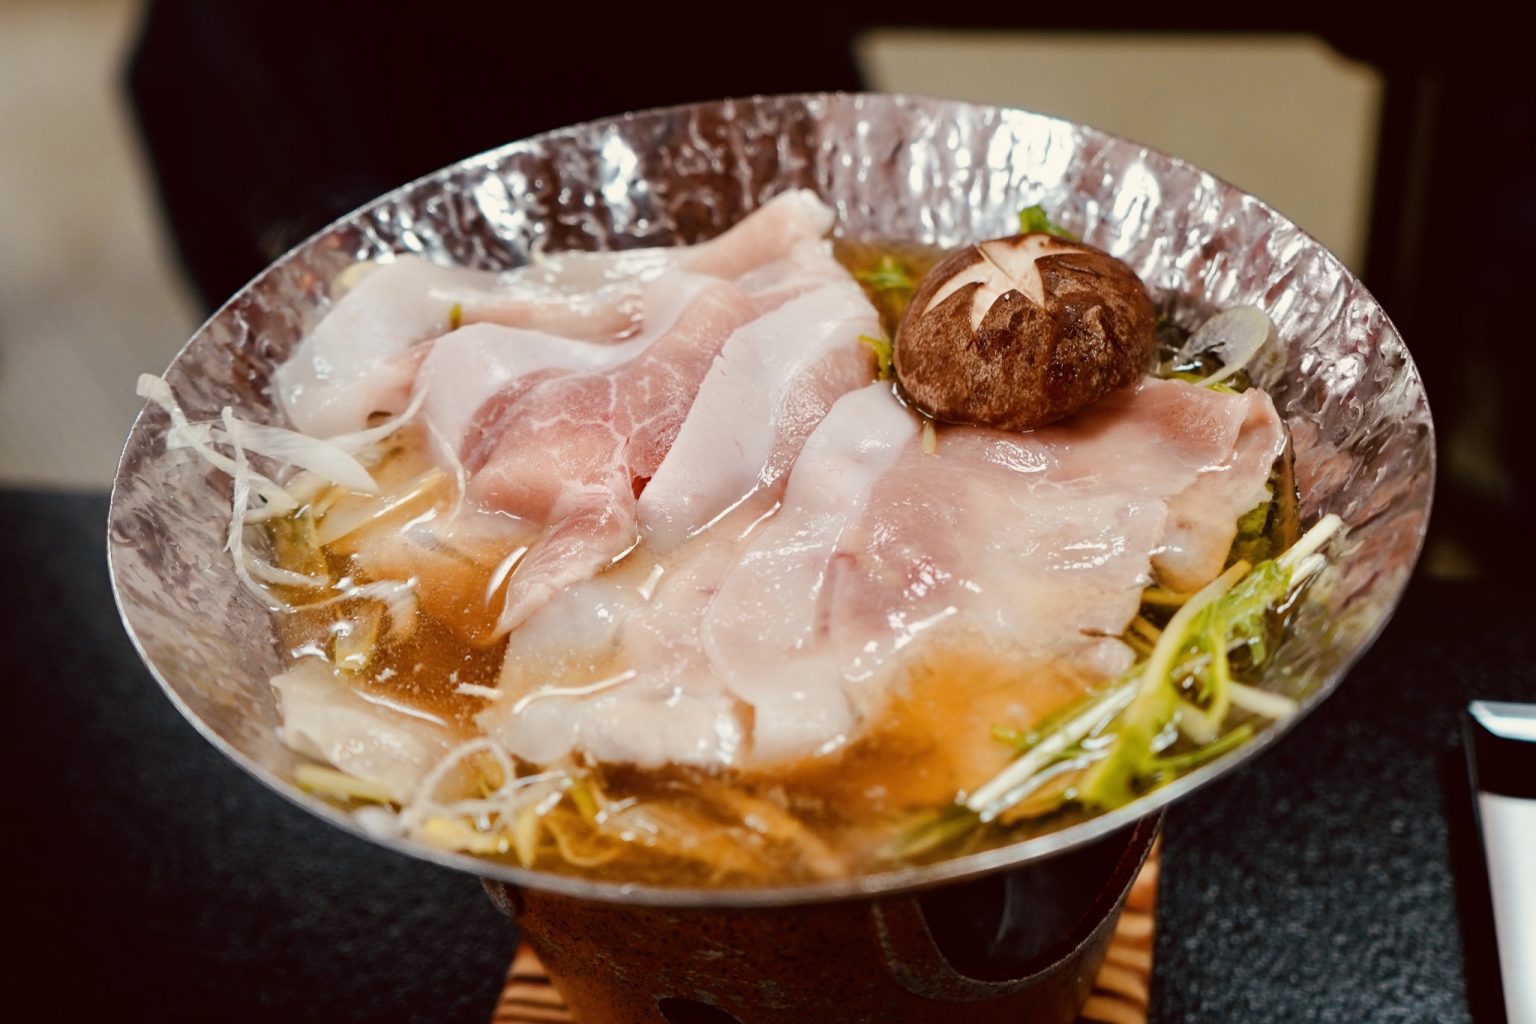 山梨が長い年月をかけて研究開発し生まれたブランド豚「甲州富士桜ポーク」は、きめ細やかで柔らかく味わい深いのが特徴です。